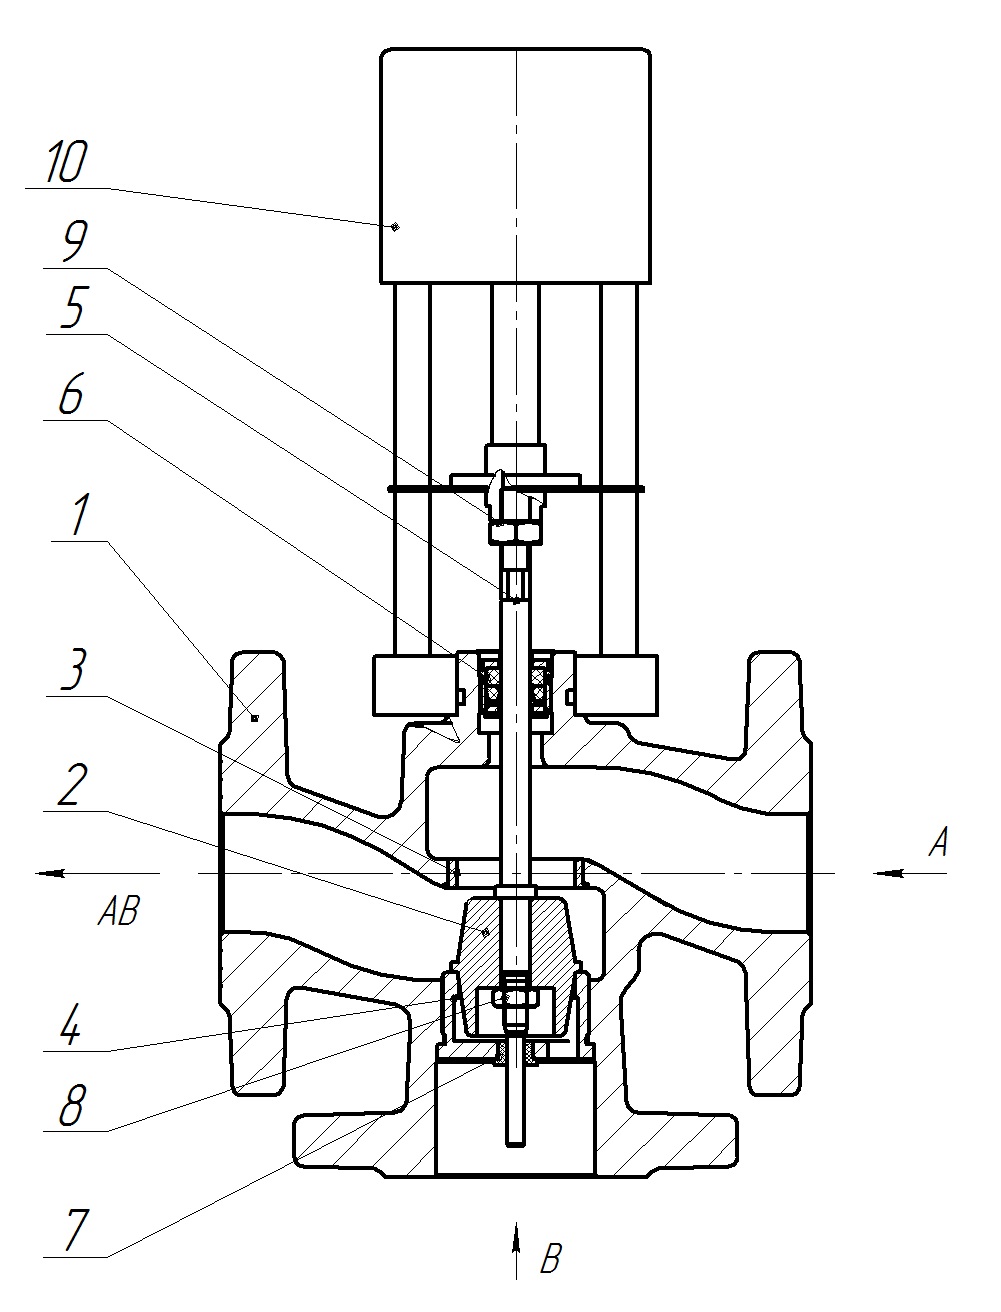 Клапан регулирующий трехходовой разделительный DN.ru 23ч901нж Ду20 Ру16 Kvs2,5 серый чугун СЧ20, фланцевый, Tmax до 150°С с электроприводом Катрабел TW-500-XD220